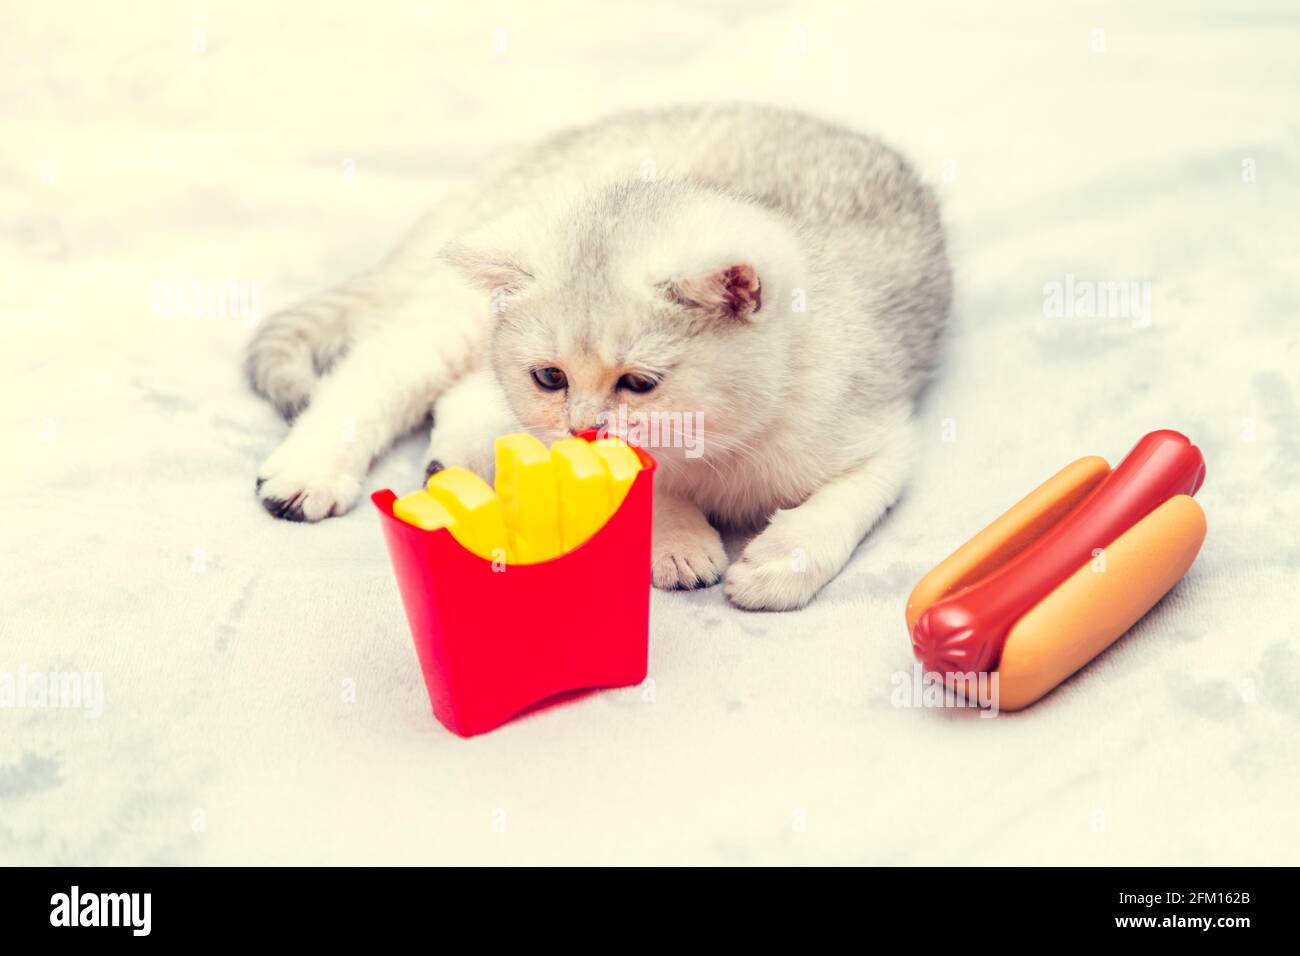 Gattino bianco giace sul letto con hot dog e patatine fritte. Concetto di stile di vita povero - immobilità e abitudini alimentari malsane. San Pietroburgo - 8 aprile 2021 Foto Stock